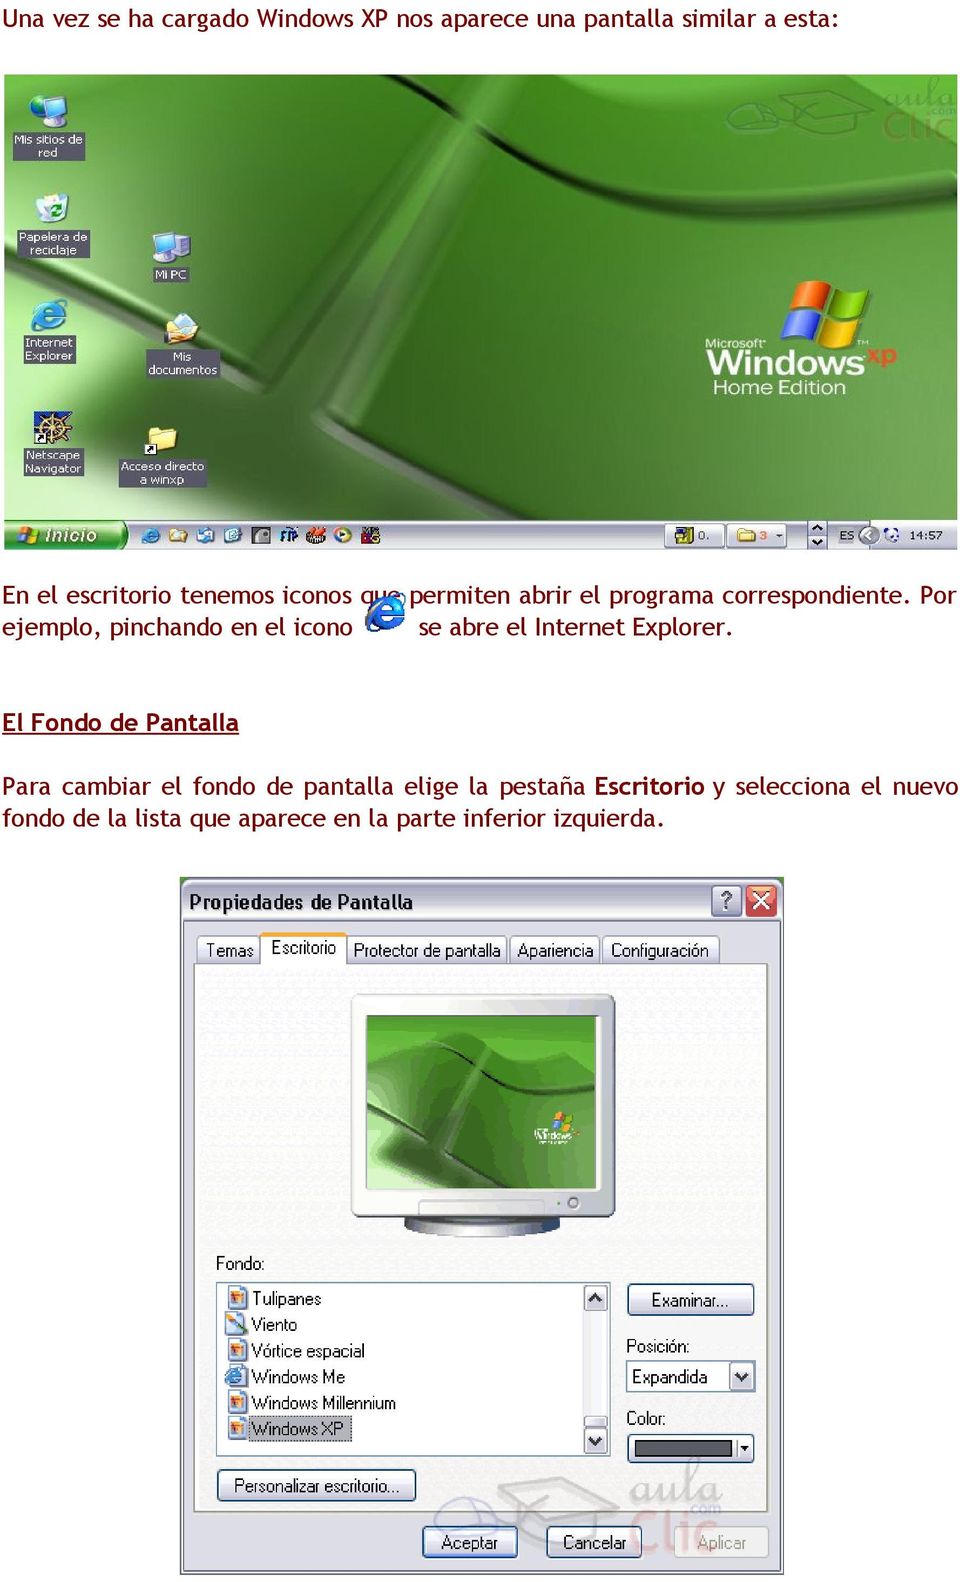 Por ejemplo, pinchando en el icono se abre el Internet Explorer.